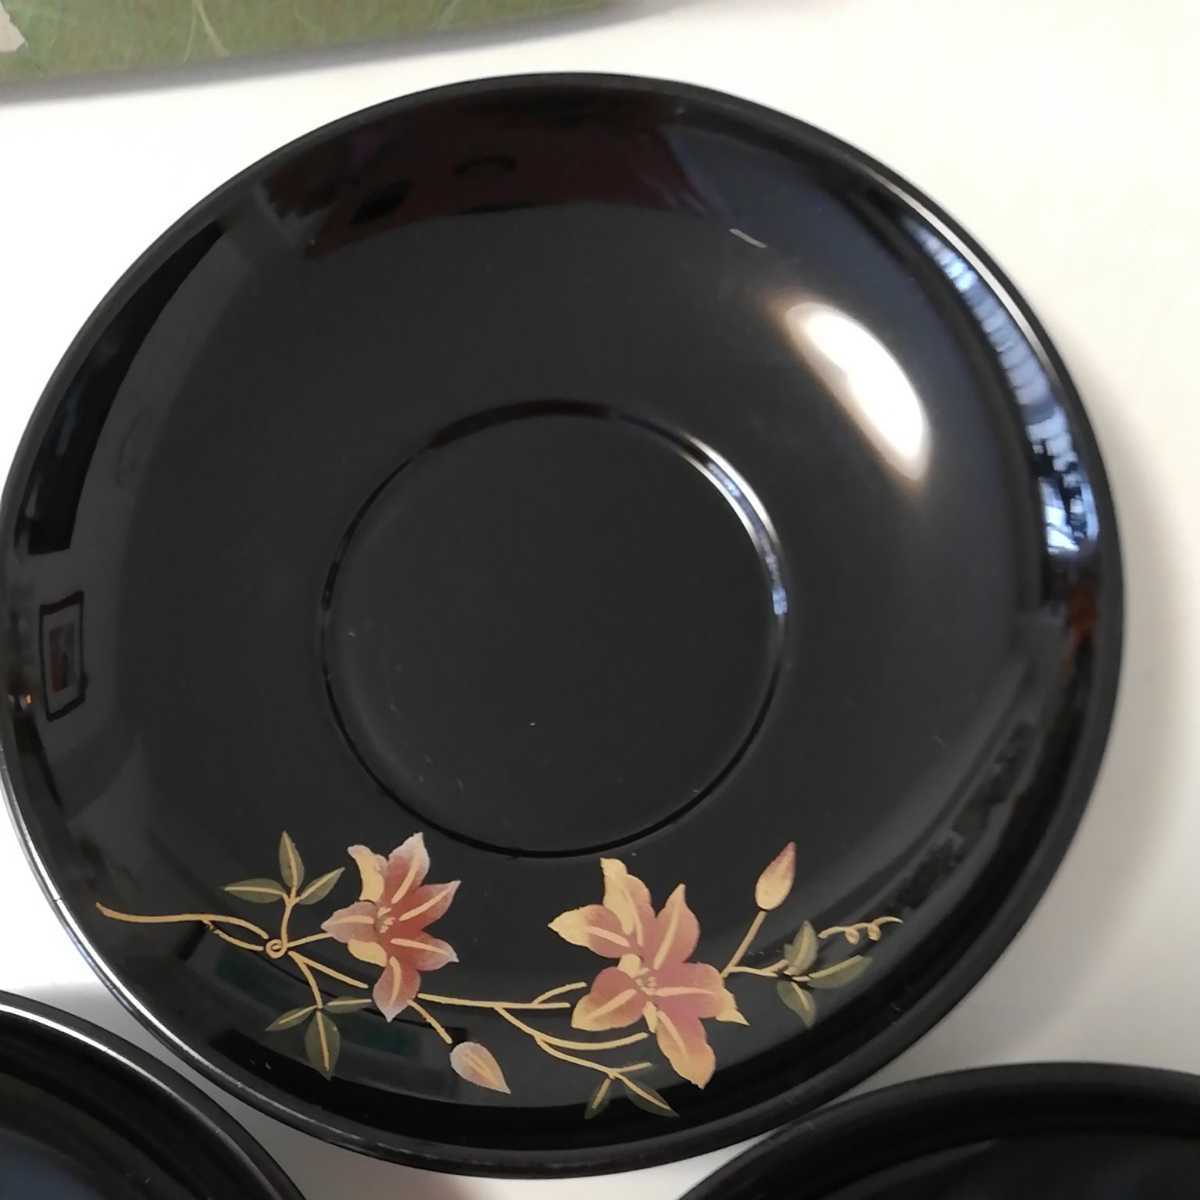 漆塗り 茶托 3枚セット クレマチス 黒 年輪 新品未使用品 自宅保管品 茶席の茶碗に合わせて オンラインショップ